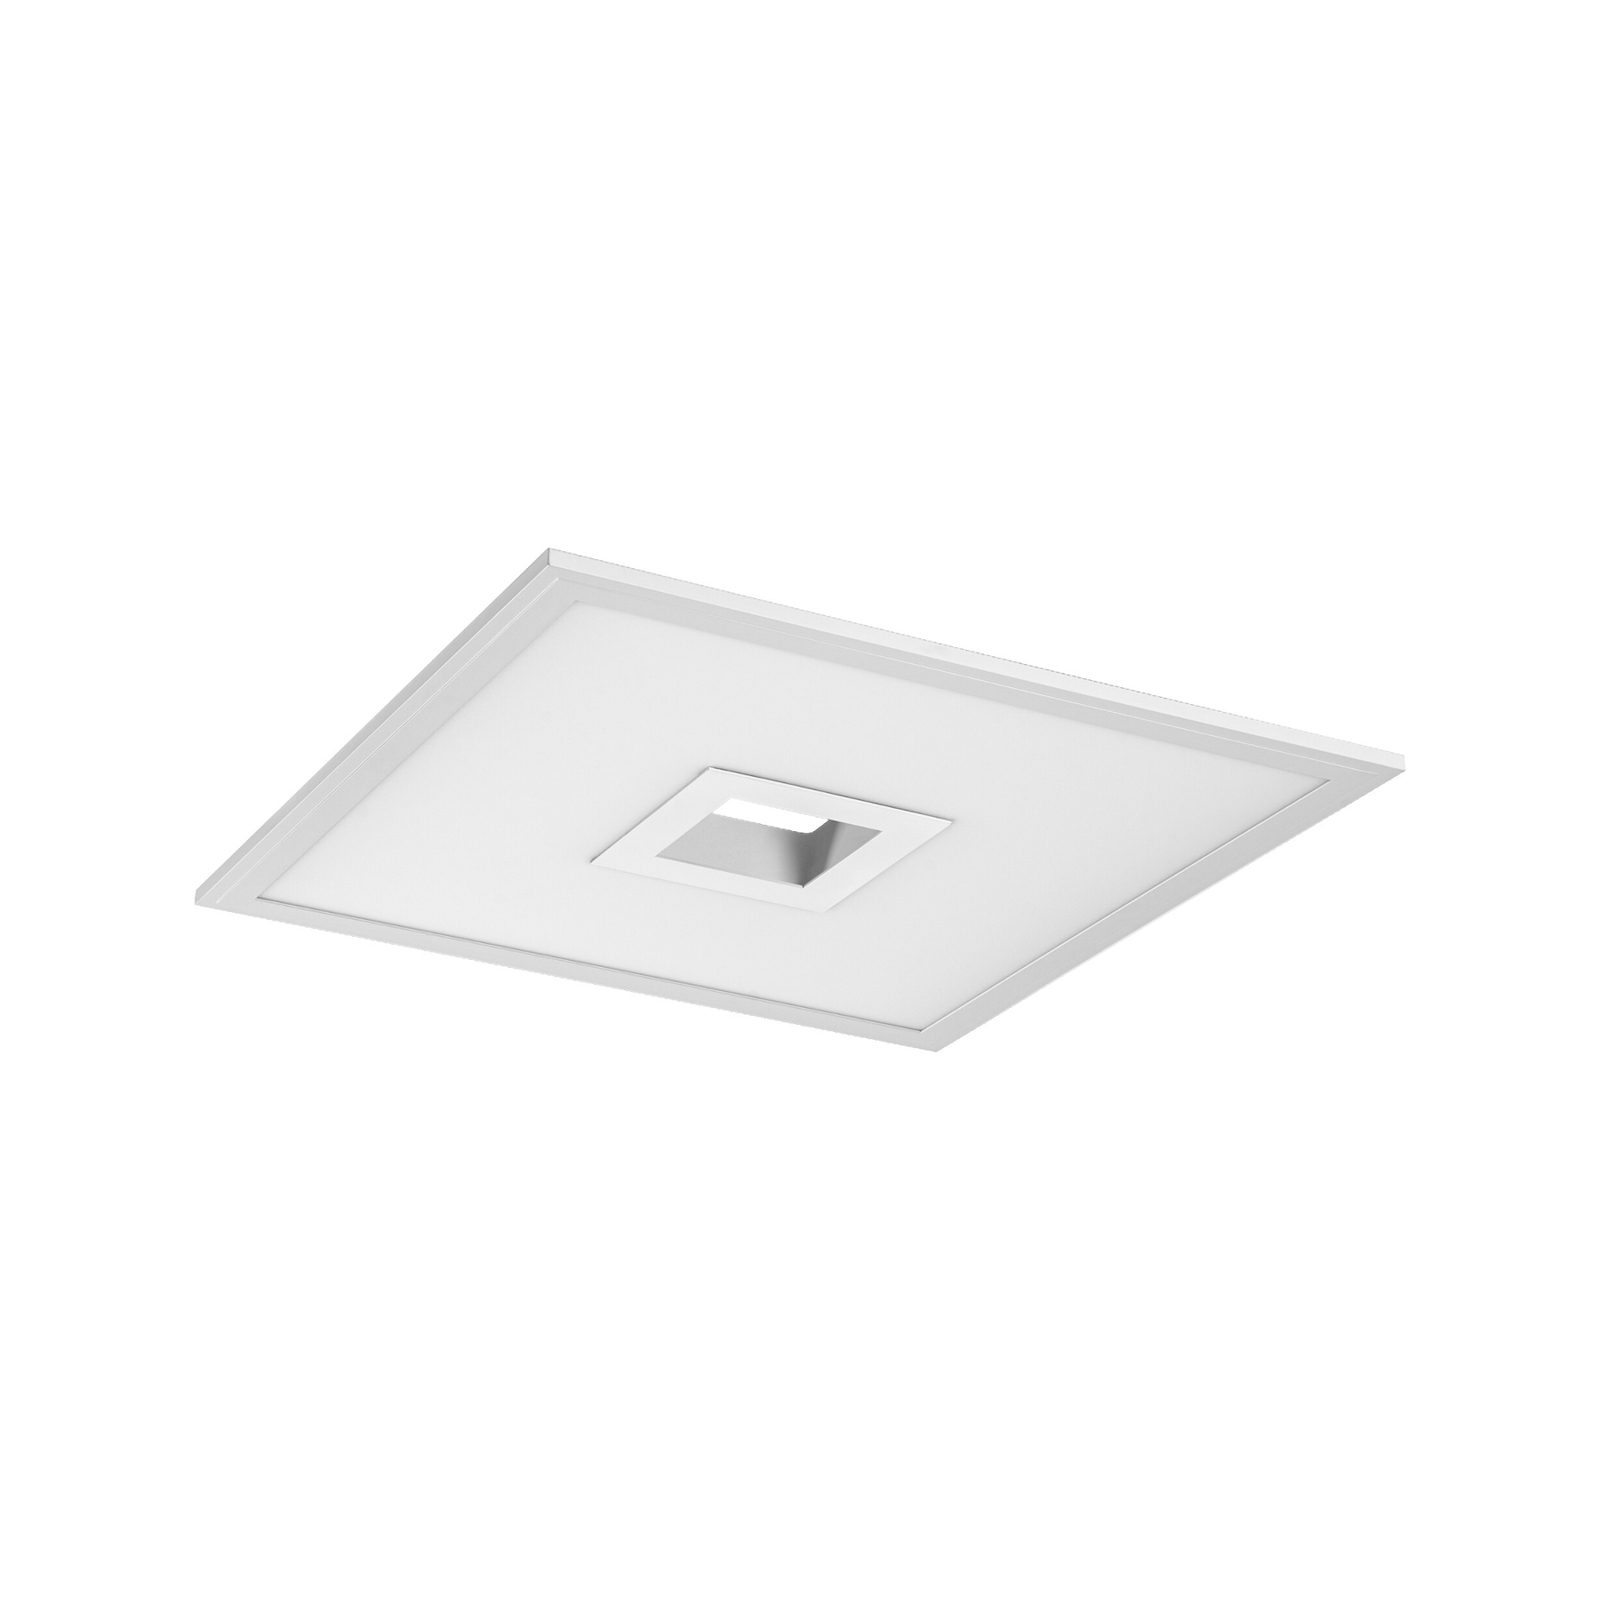 LEDVANCE SMART+ WiFi Planon Plus Hole 45x45cm weiß